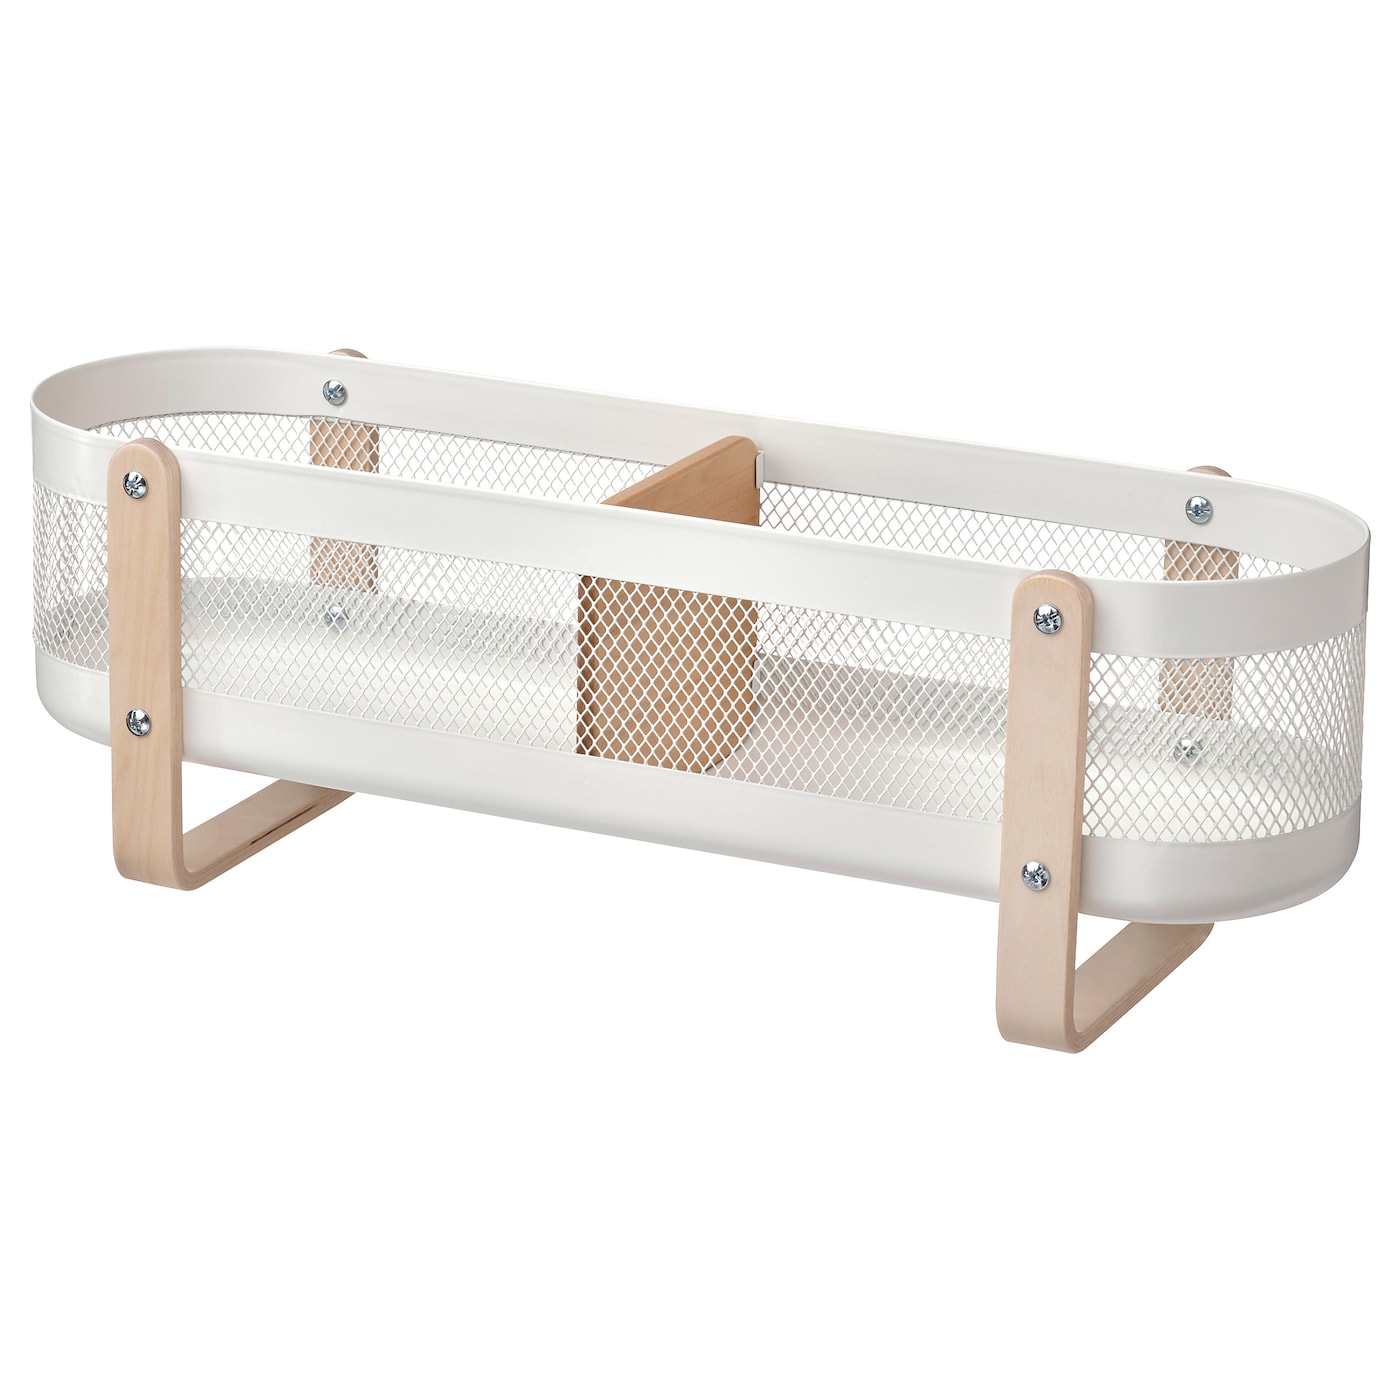 Настольный органайзер - RISATORP IKEA/ РИСАТОРП ИКЕА,  50x16x17 см, белый